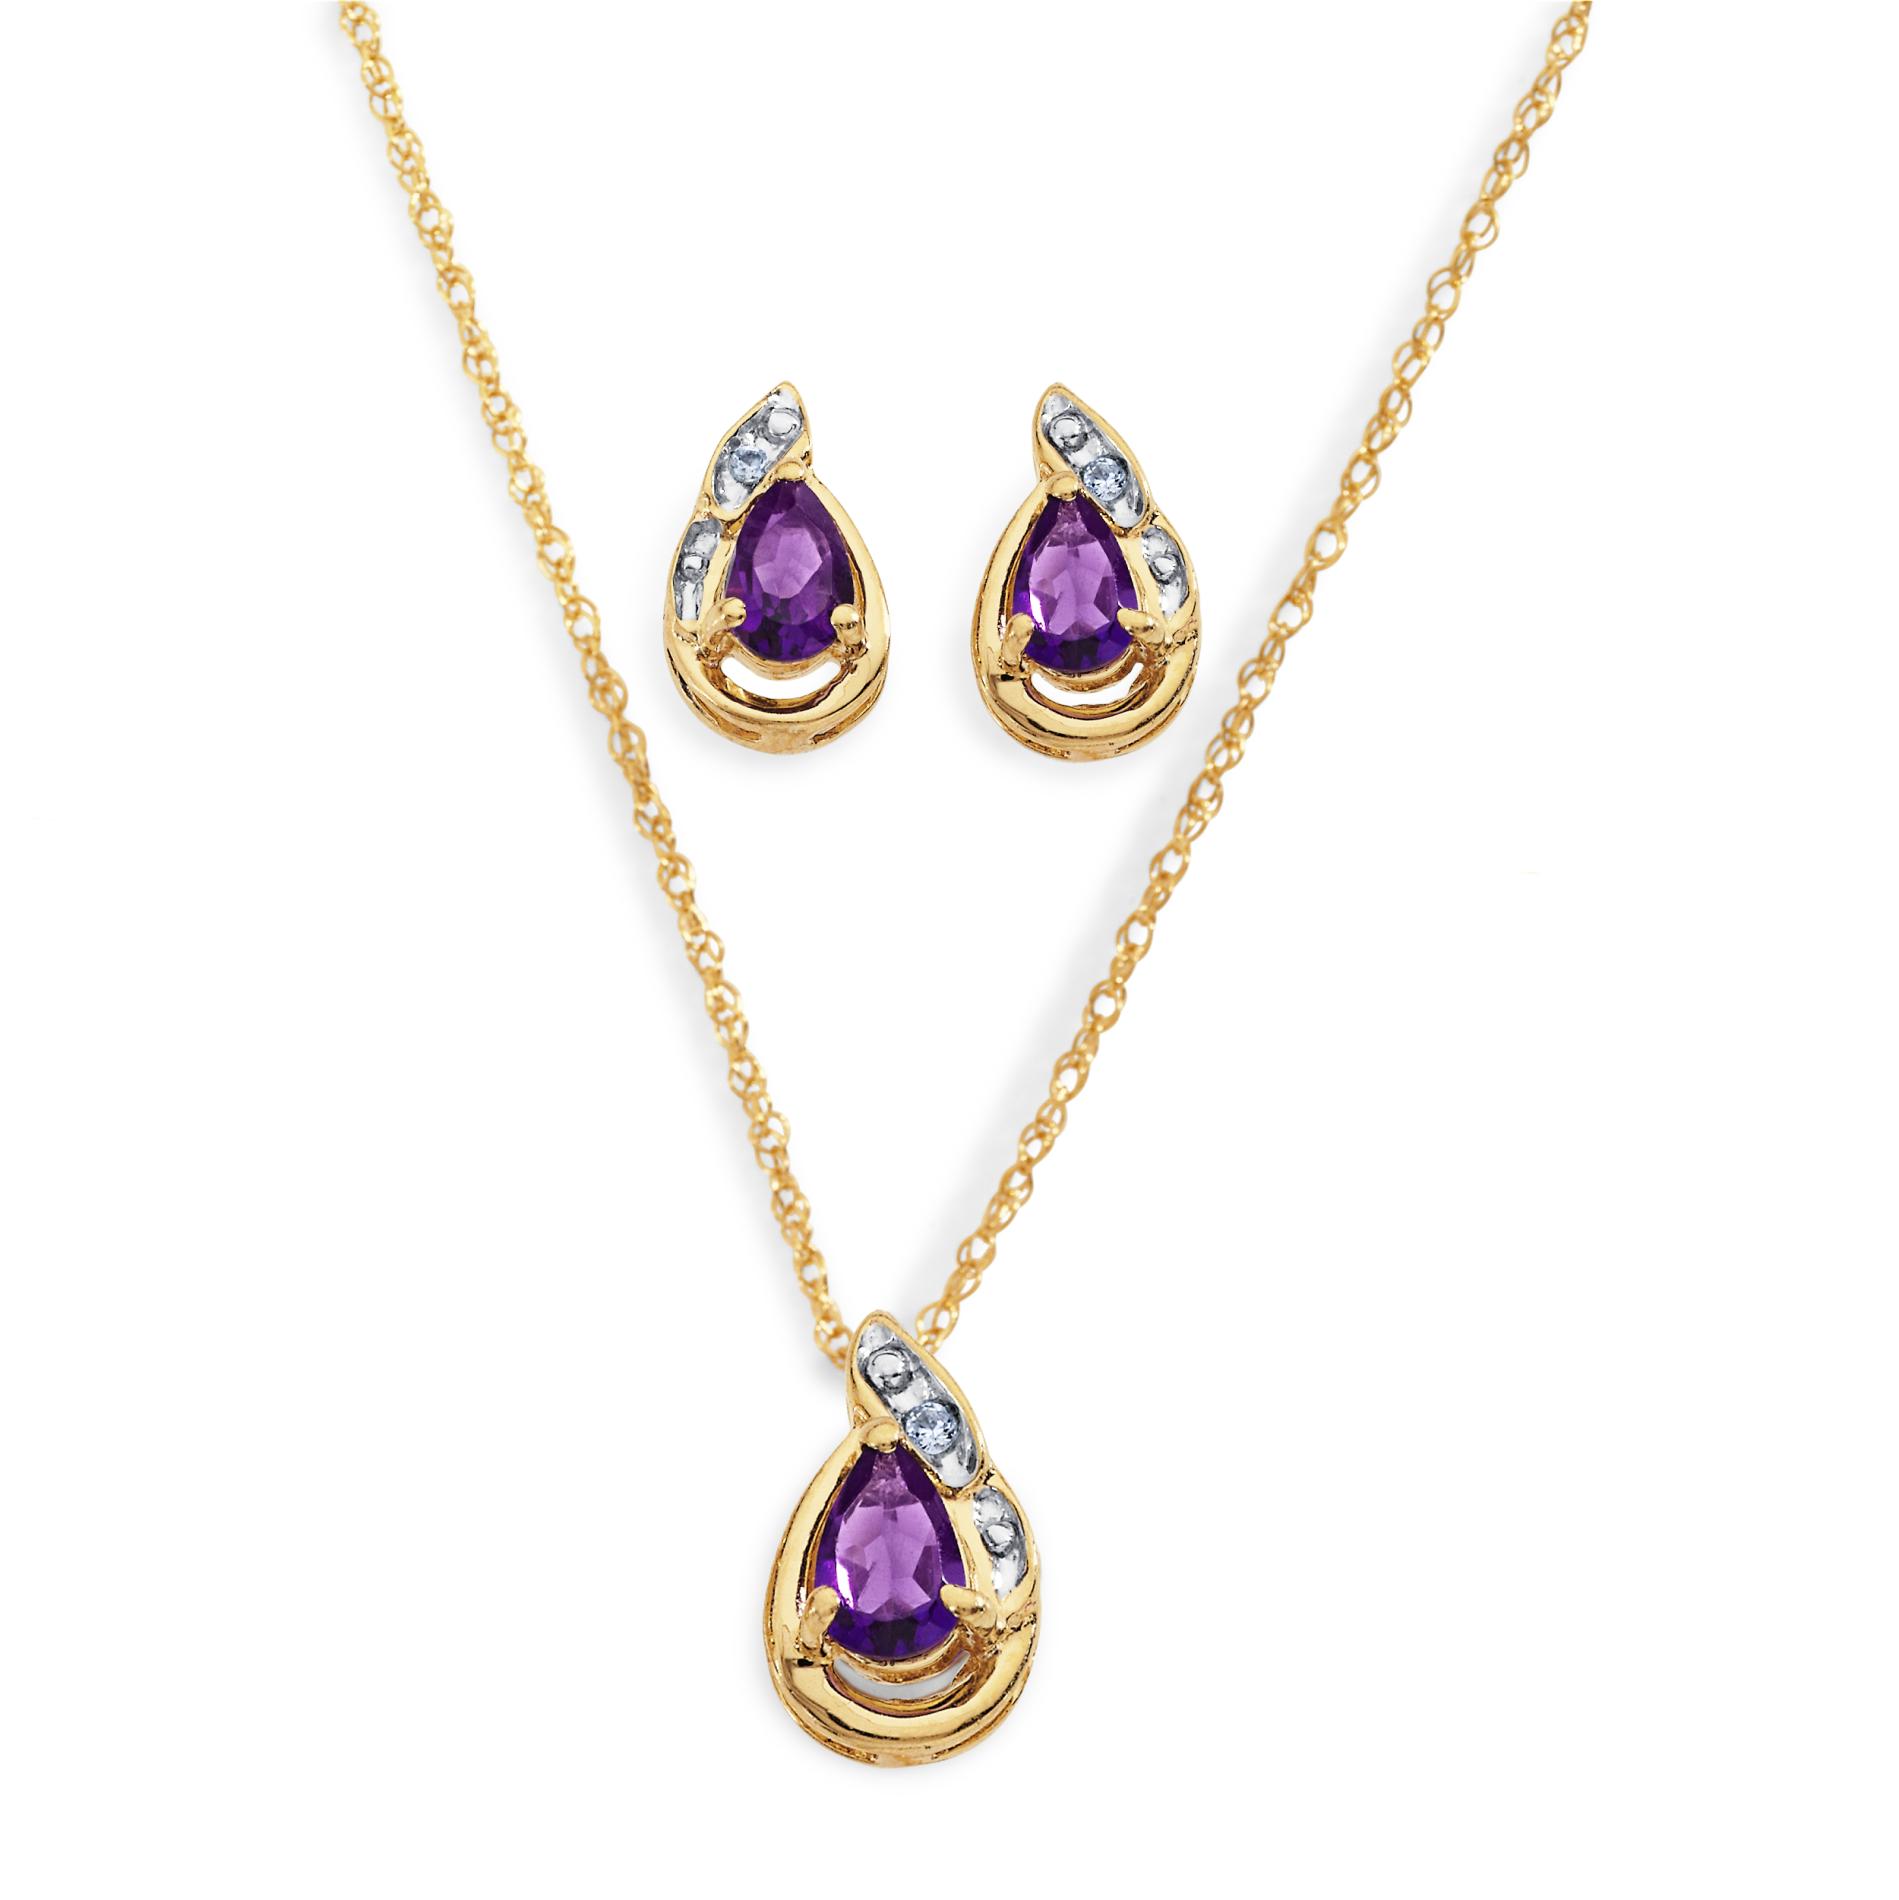 Amethyst Necklace & Earrings Set - Jewelry - Jewelry Sets